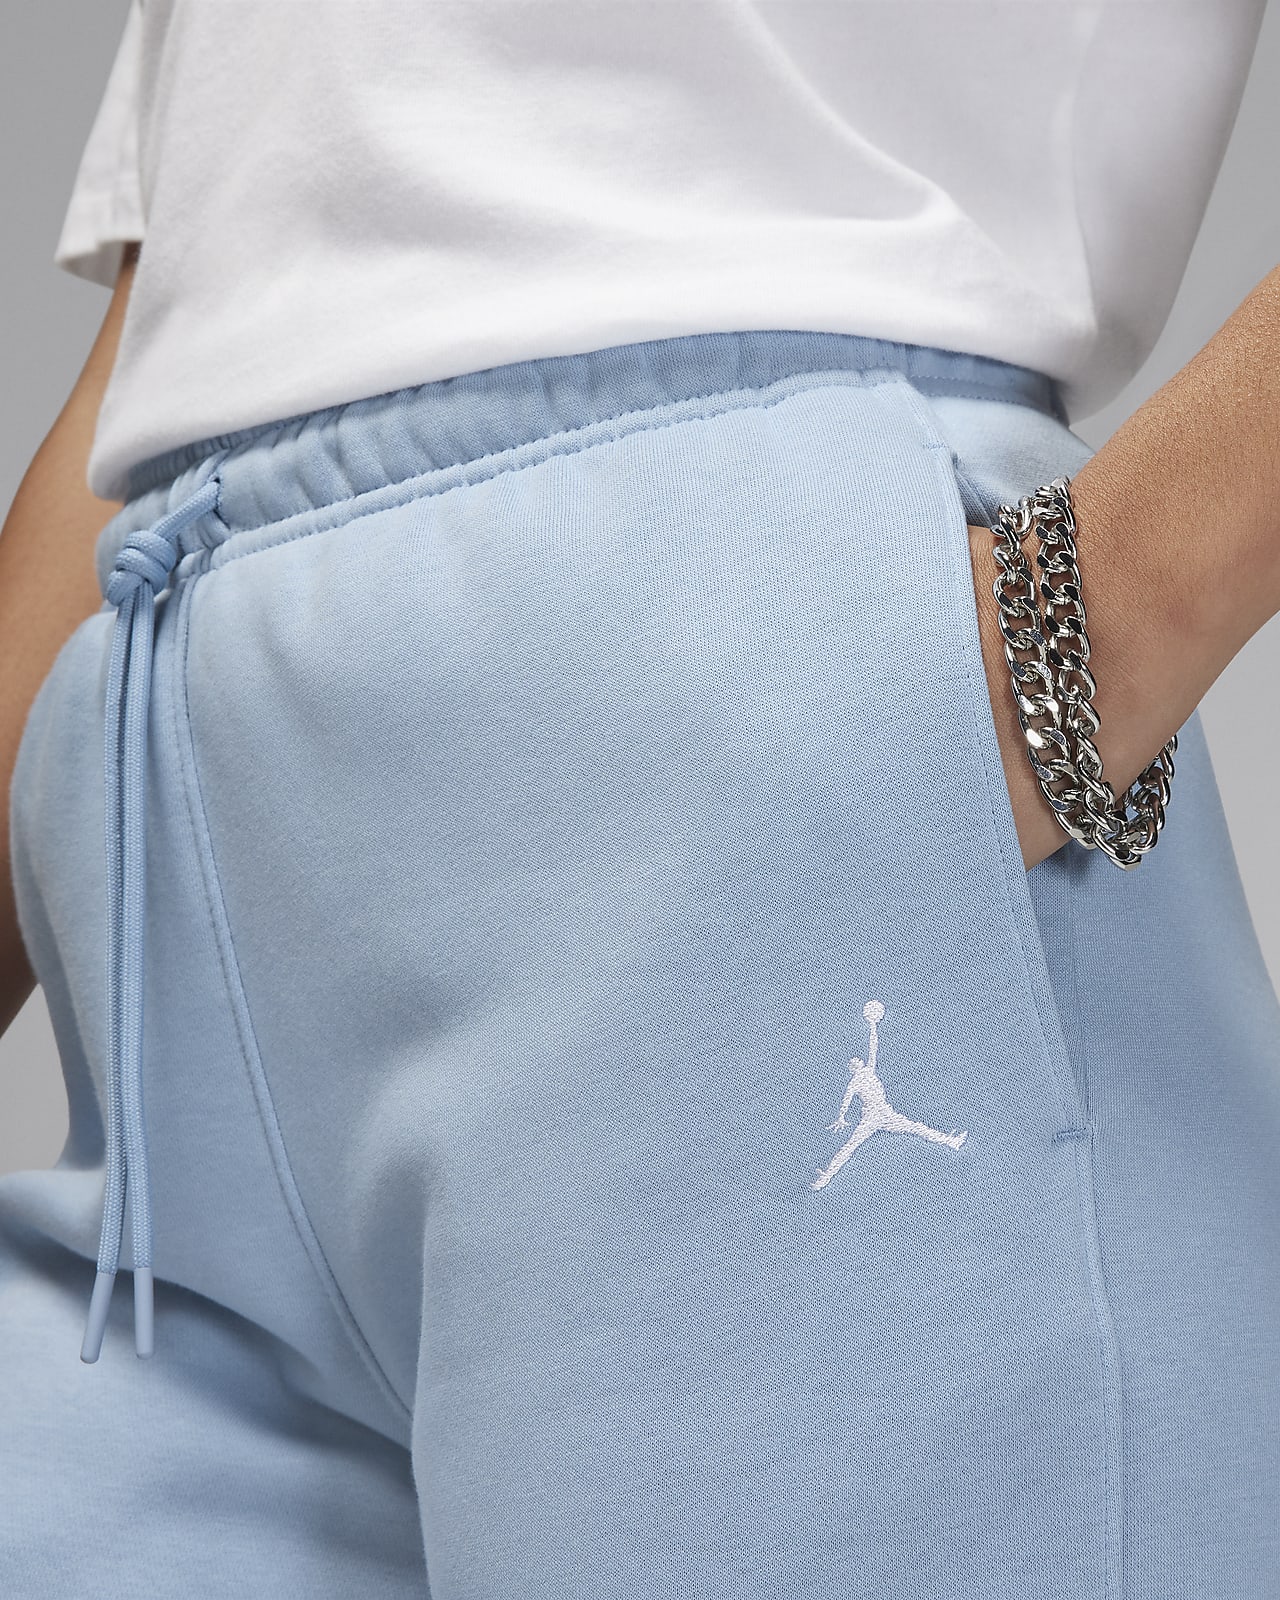 Women's Jordan Brooklyn Fleece Pants